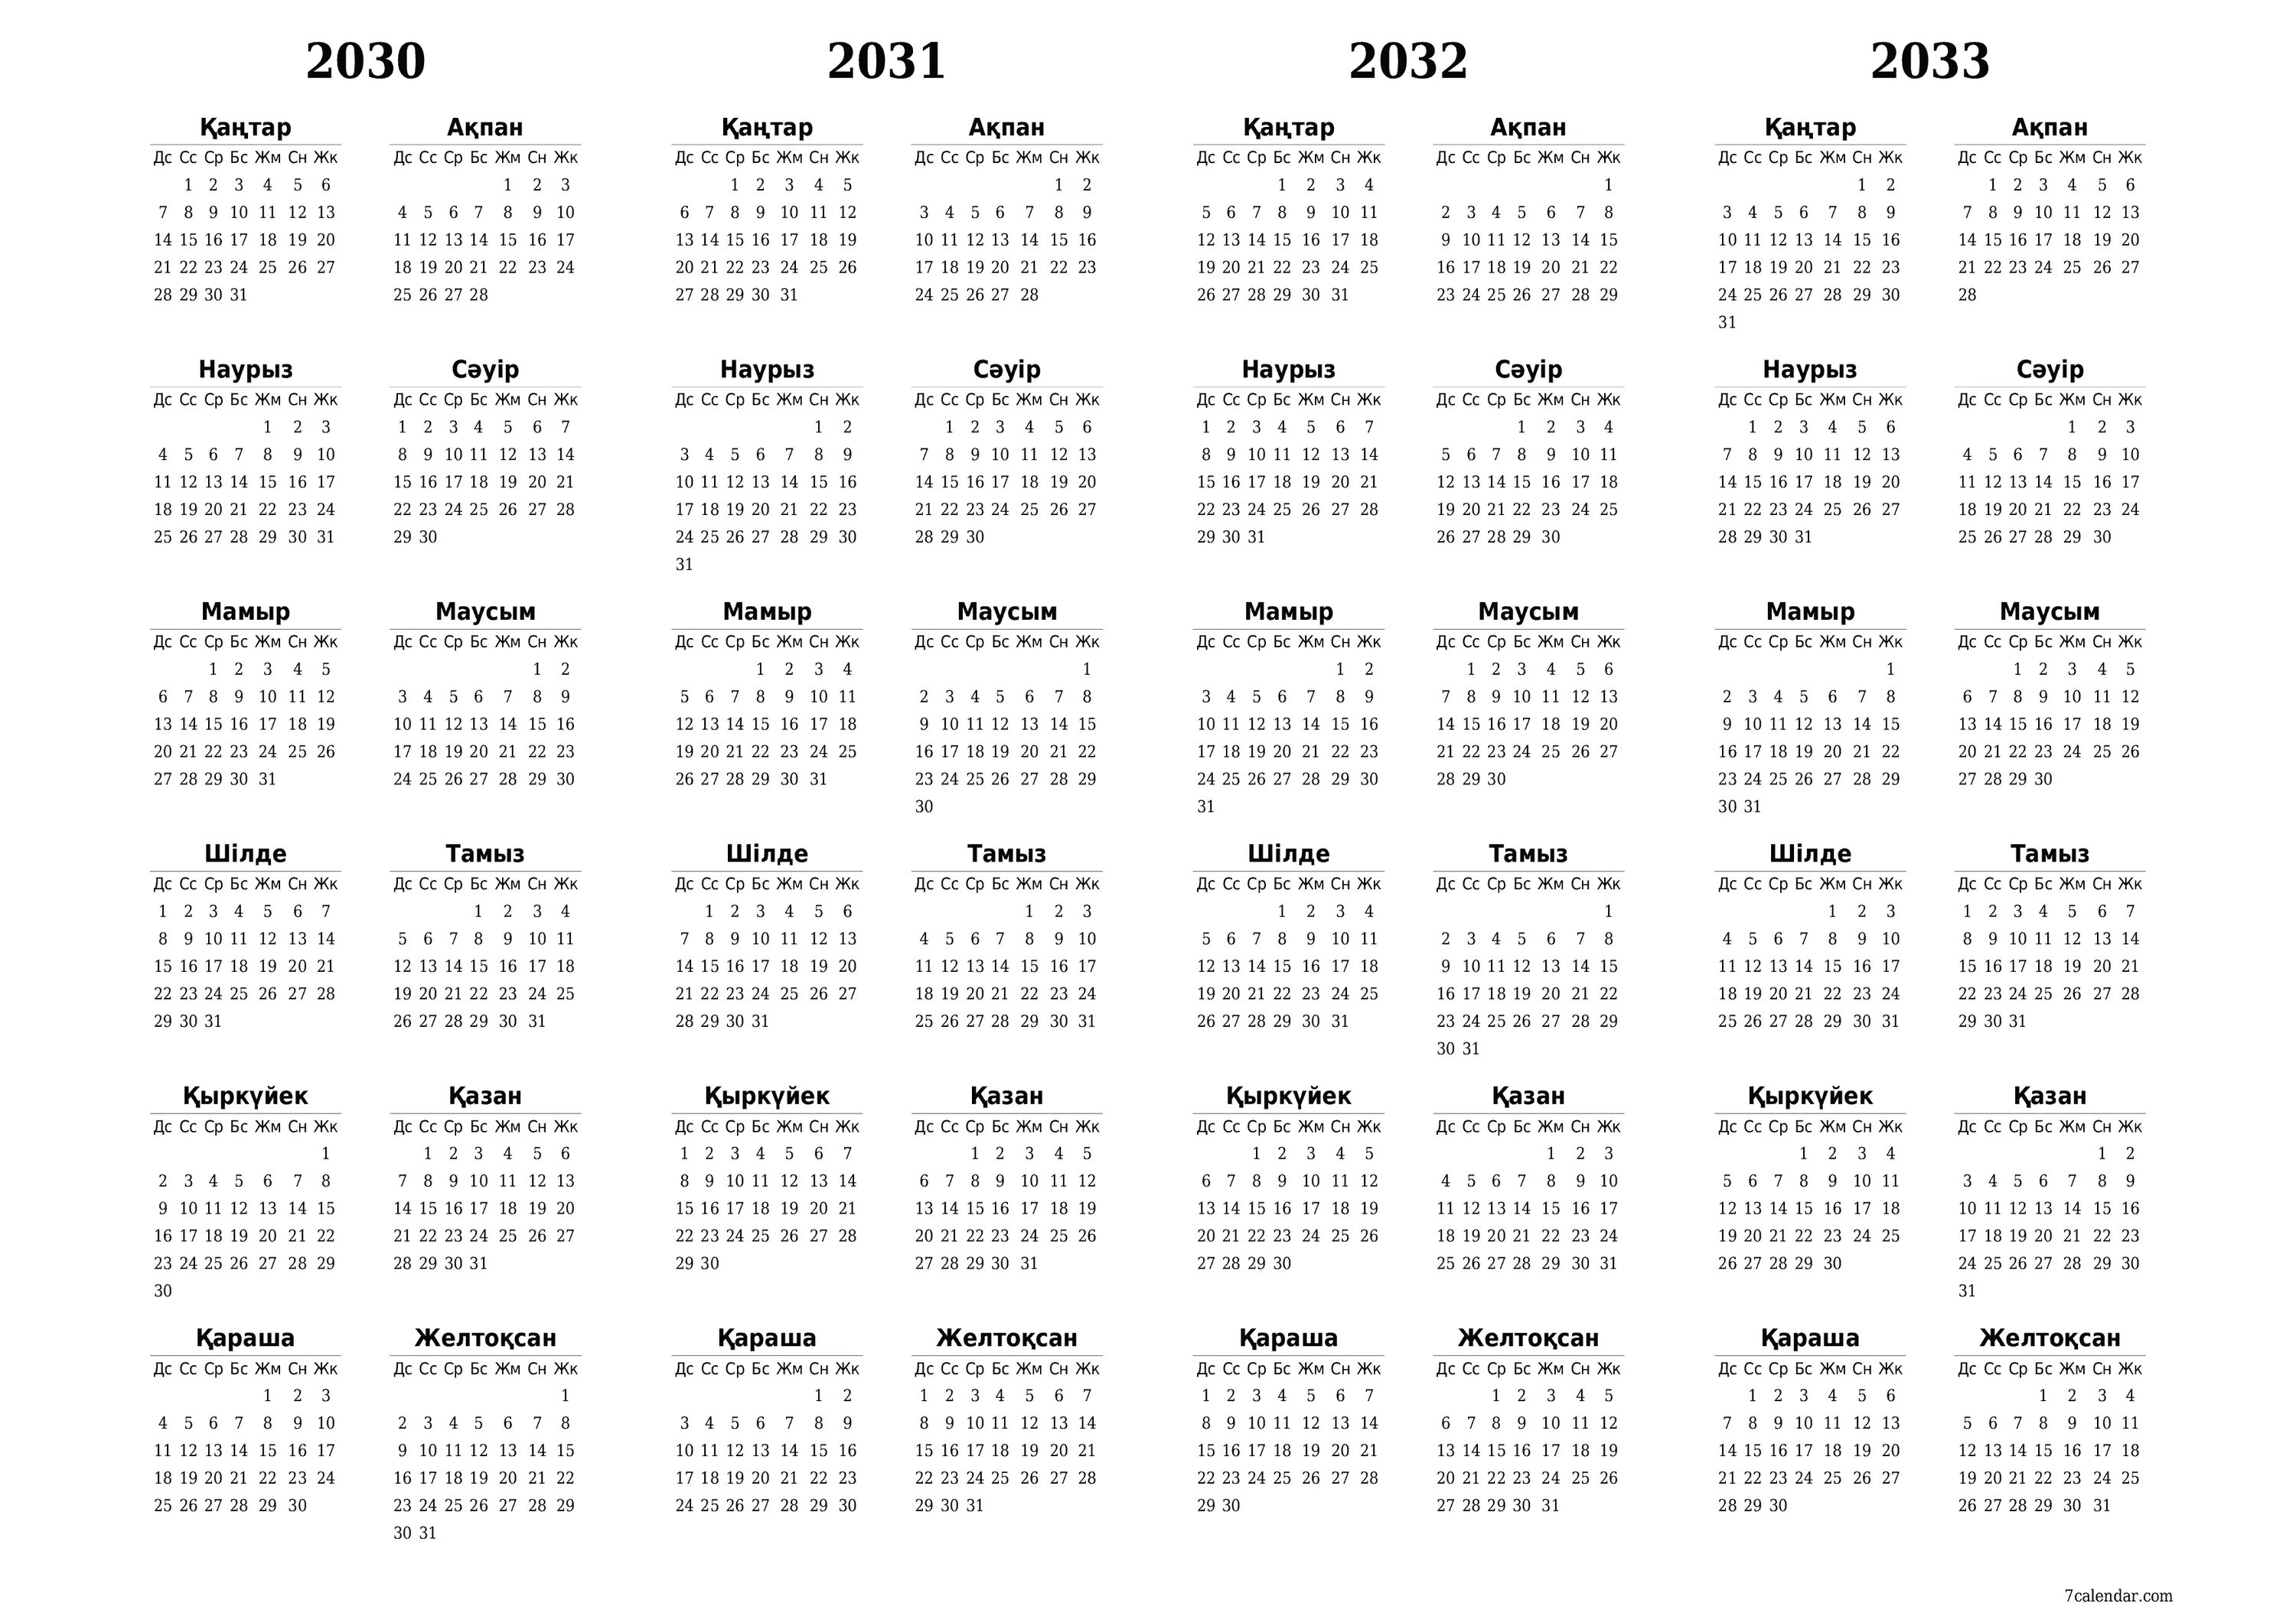 Календарь 2024 2025 2026 2027 2028. Календарь 2026,2027, 2028. Календарь на 2025 2026 2027 2028. Календарь 2025 2026 года.